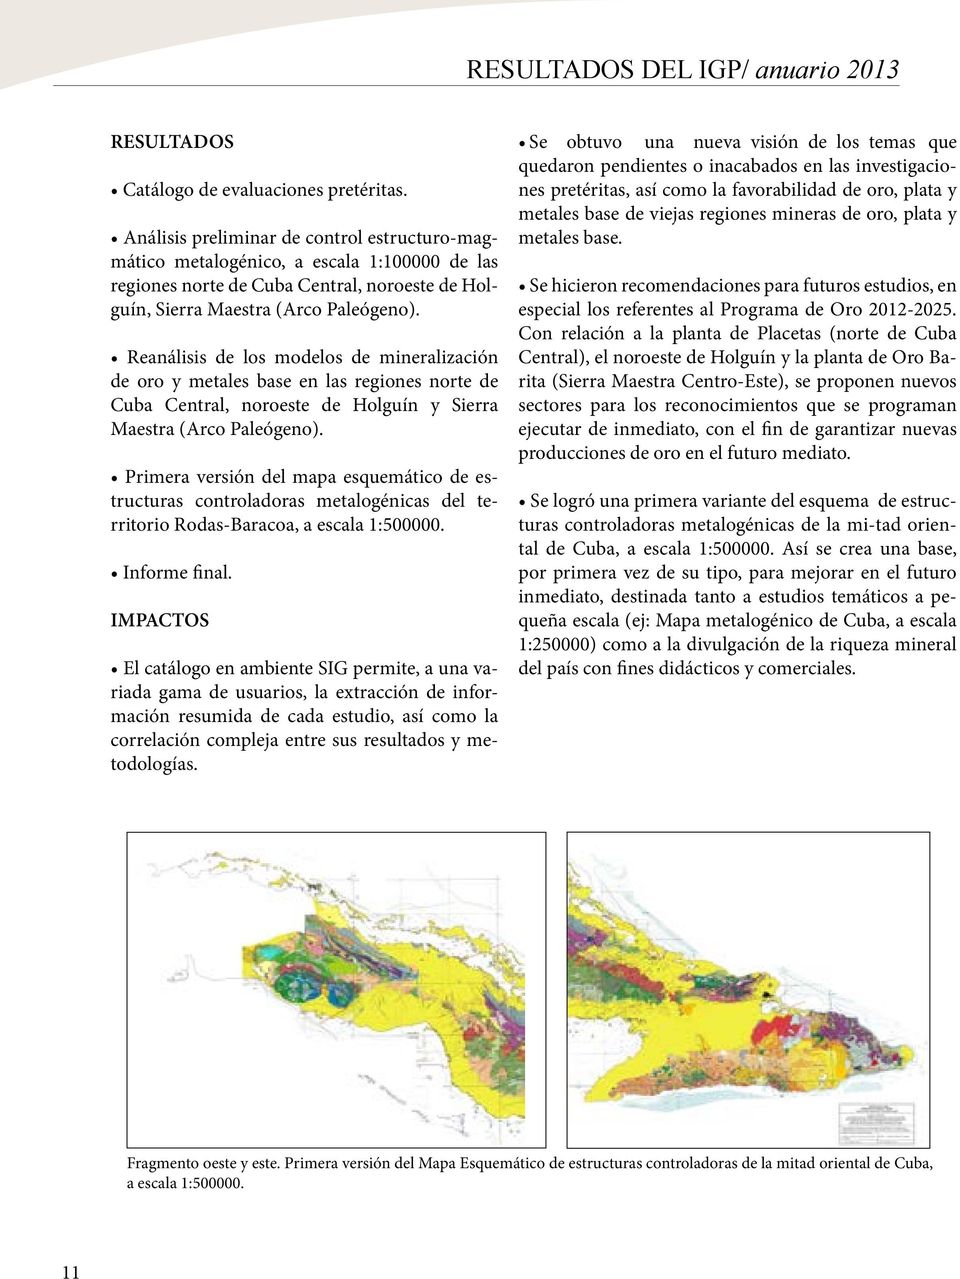 Reanálisis de los modelos de mineralización de oro y metales base en las regiones norte de Cuba Central, noroeste de Holguín y Sierra Maestra (Arco Paleógeno).